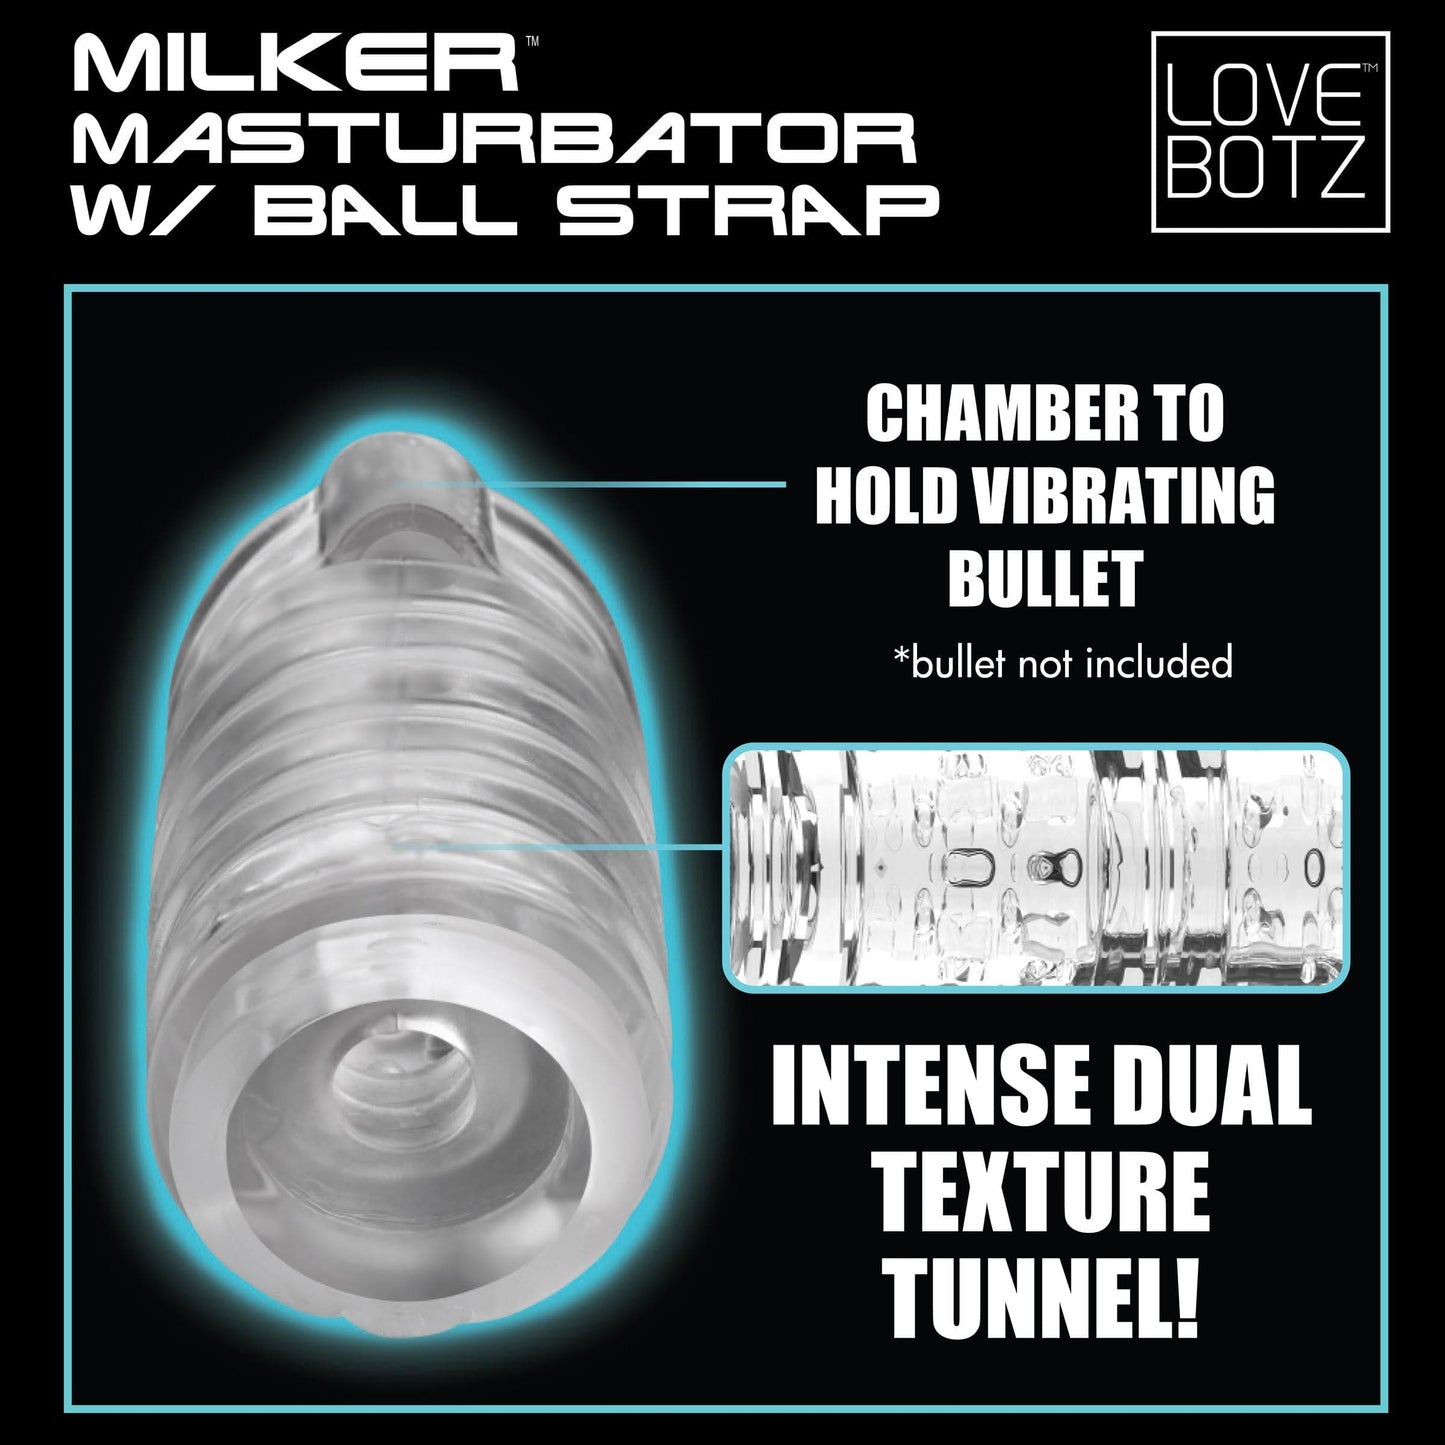 LoveBotz Manual Stroker Milker Masturbator With Ball Strap at the Haus of Shag